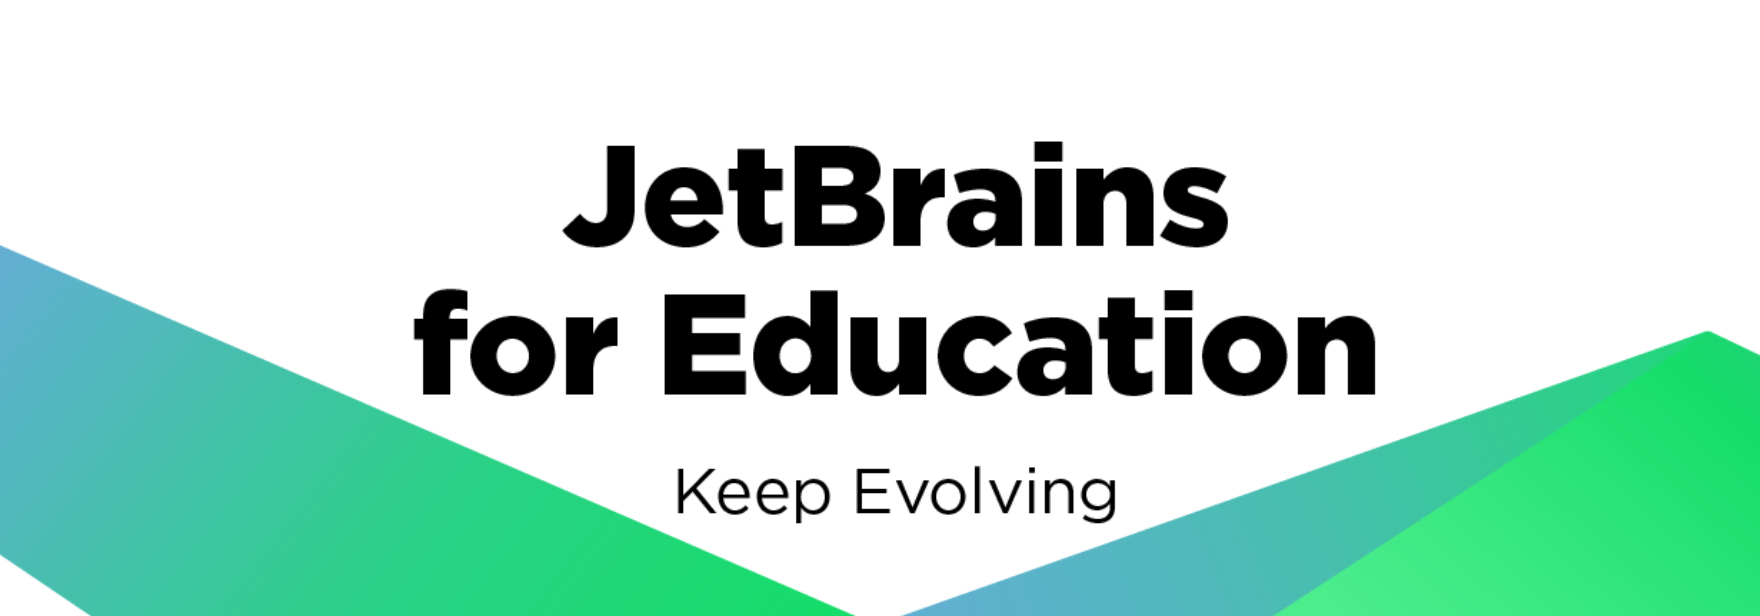 JetBrains анонсировала новые стипендии для российских студентов. Их получат участники международных олимпиад школьников